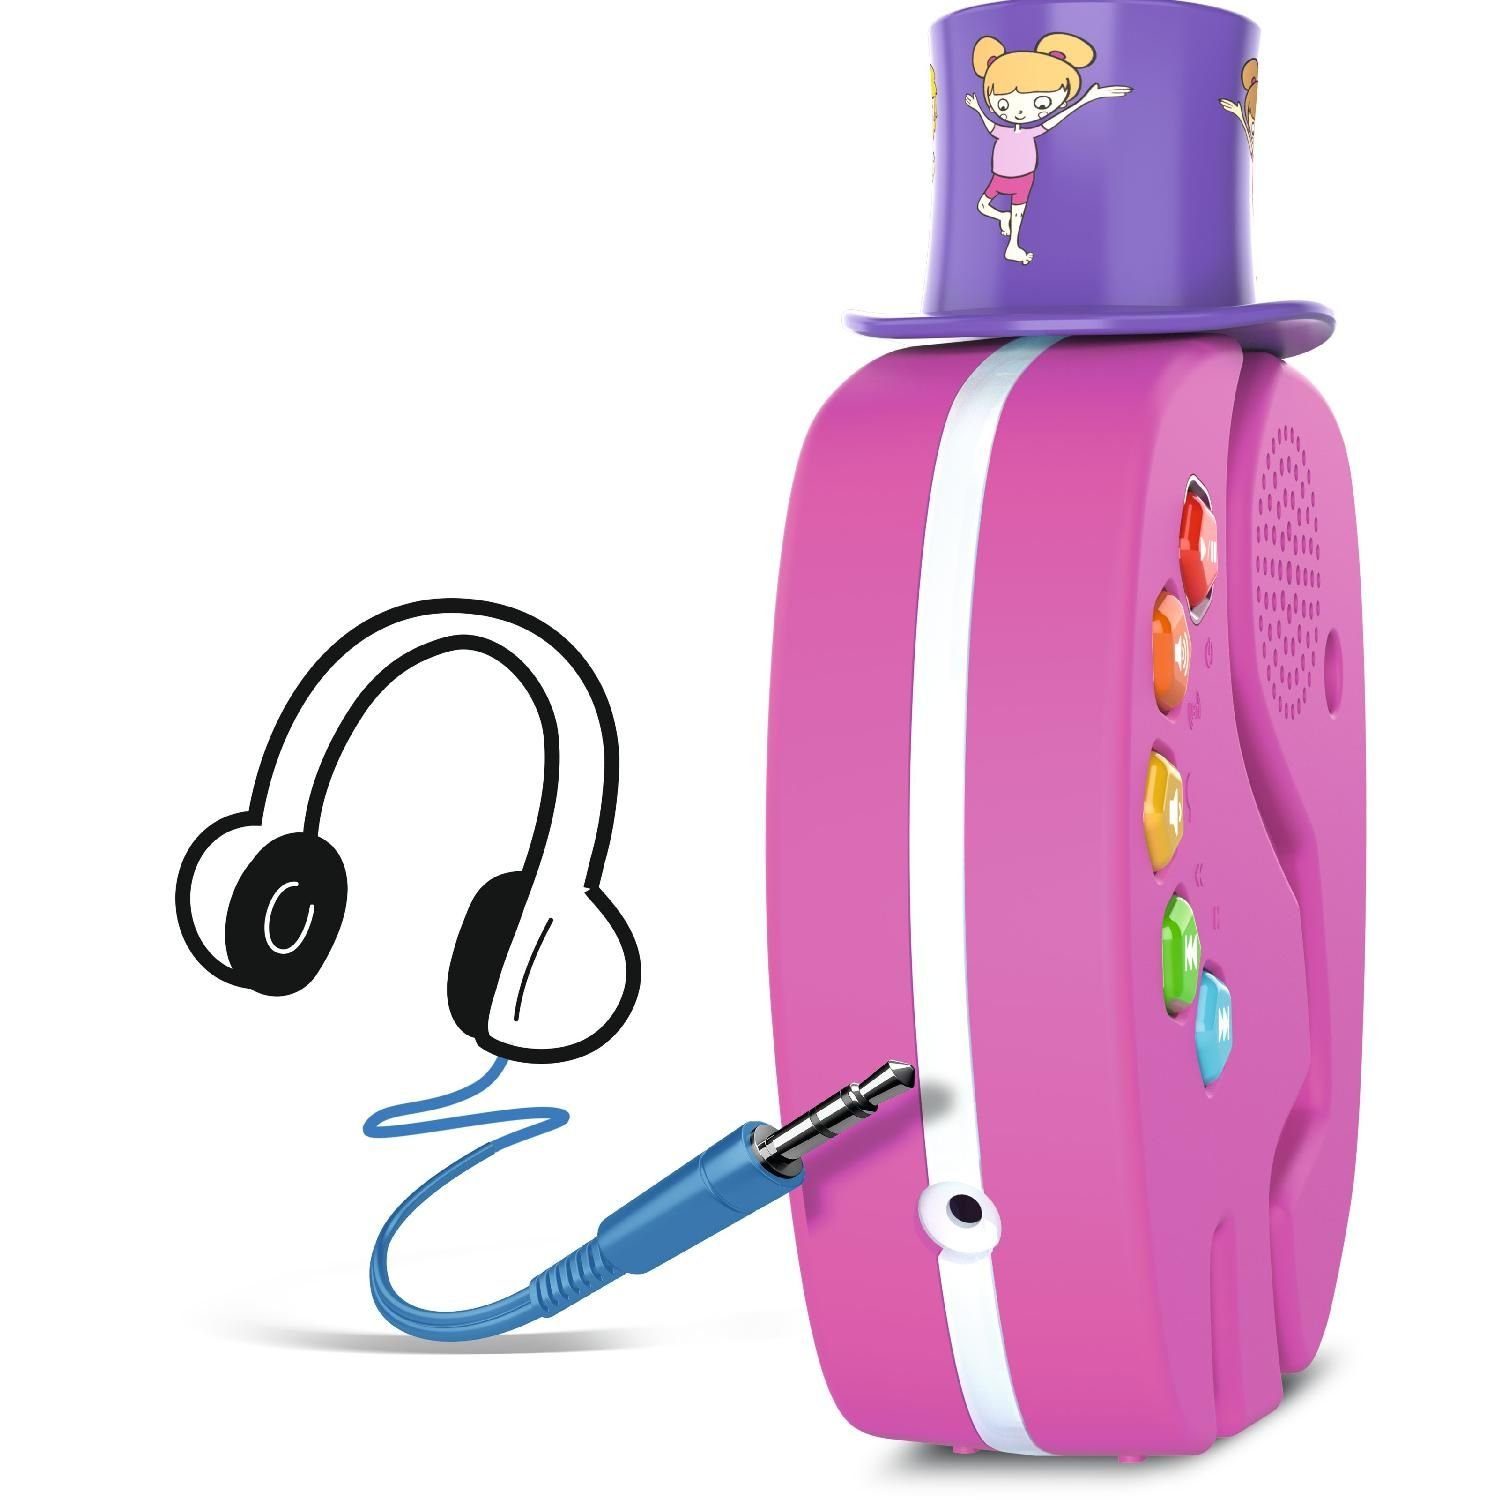 pink Kinder über streamen) TechniSat TECHNIFANT Bluetooth-Lautsprecher Nachtlicht Audio für (Bluetooth, Audioinhalte Player und Bluetooth